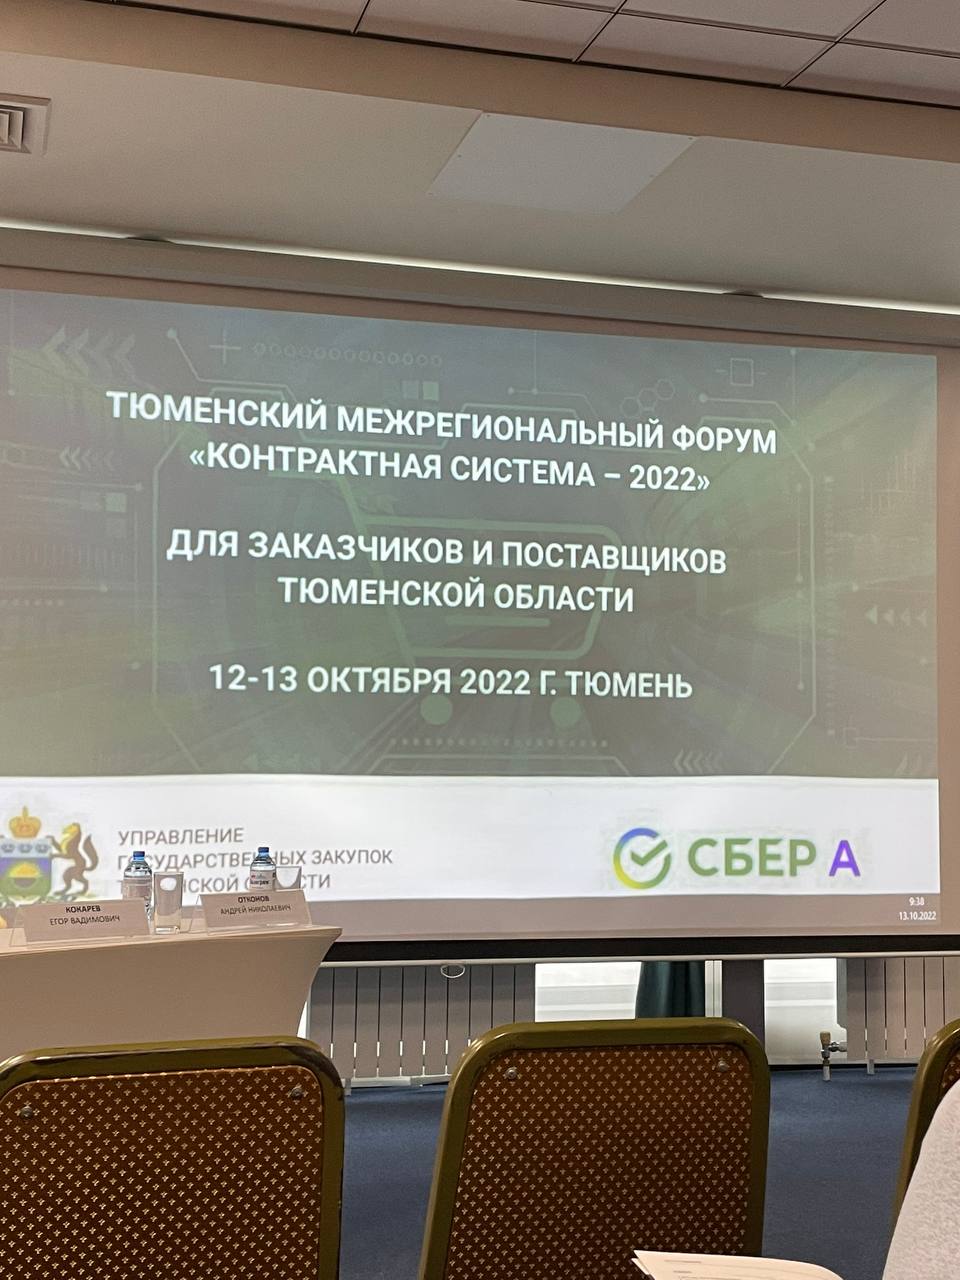 Специалисты компании "Тримет" посетили межрегиональный форум "Контрактная система - 2022"